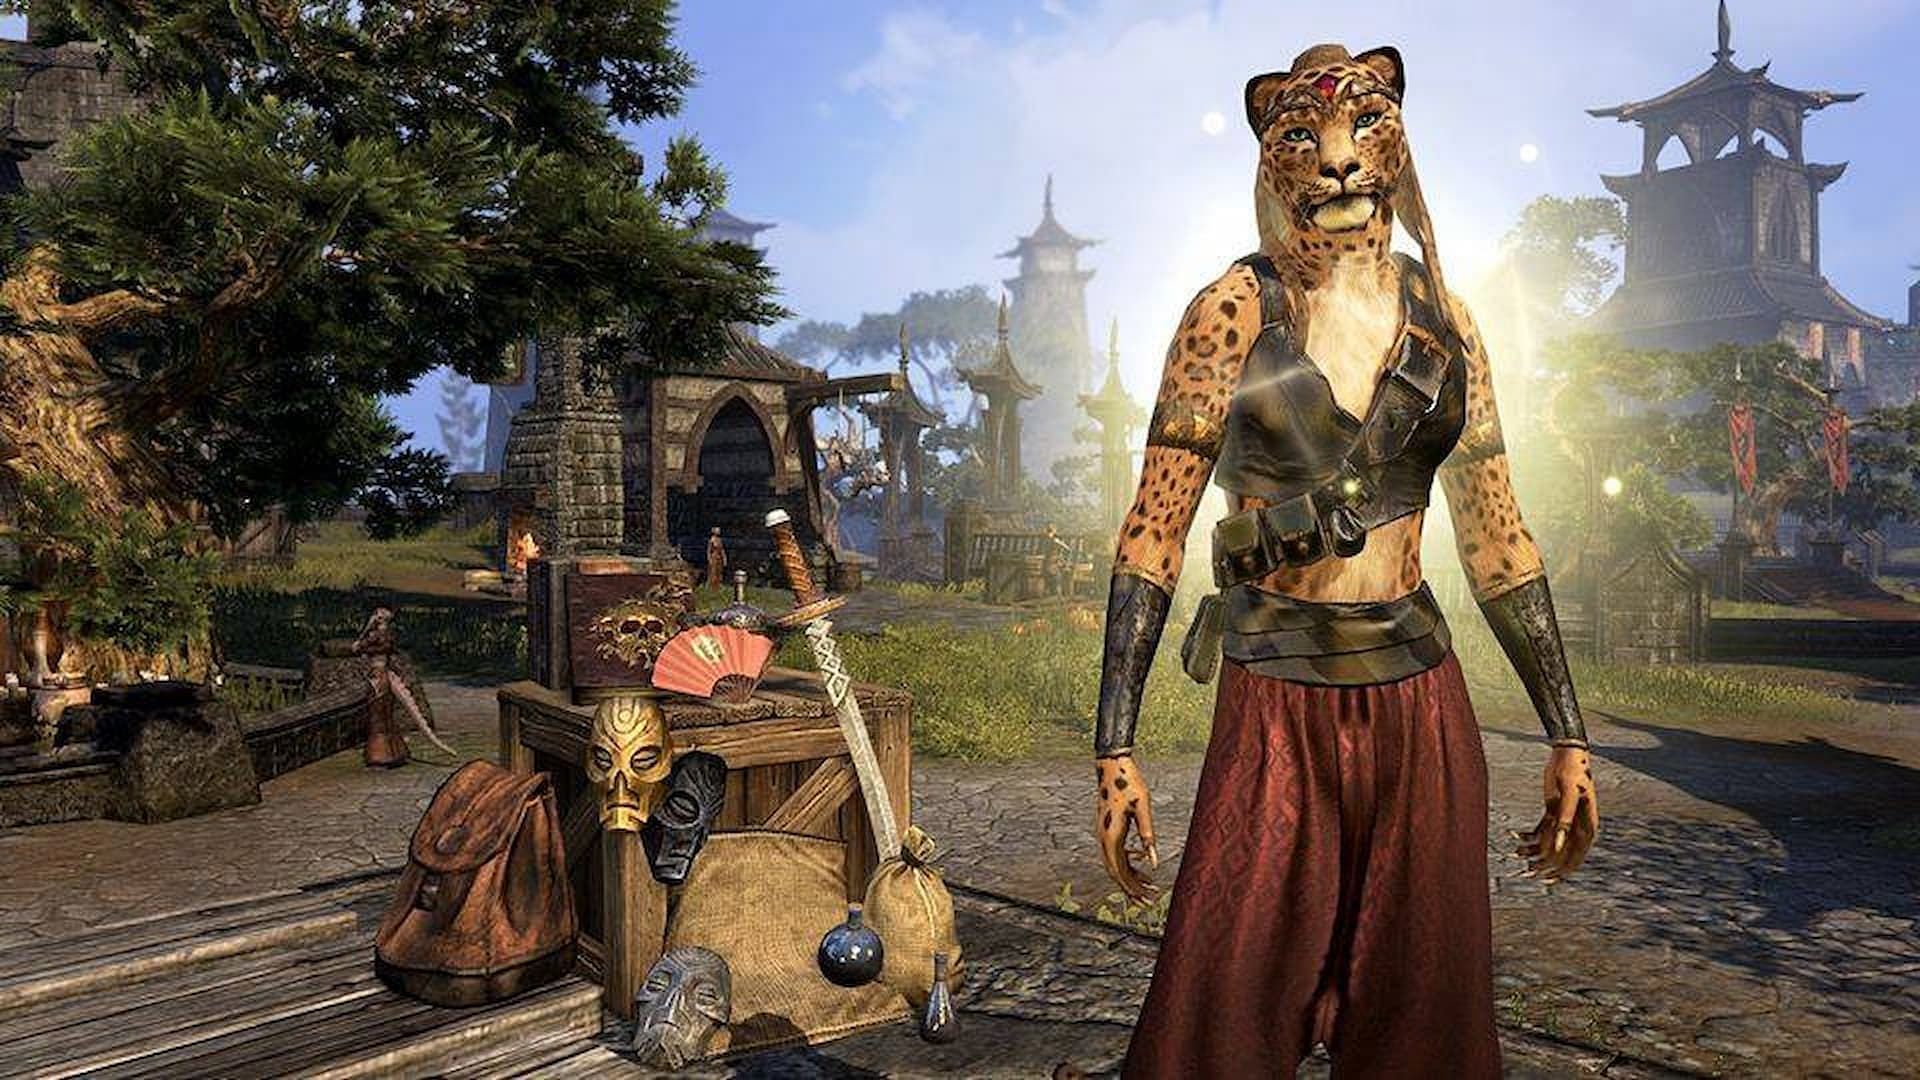 Adhazabi Aba-daro the Golden sells endgame gear in The Elder Scrolls Online (Image via ZeniMax Online Studios)